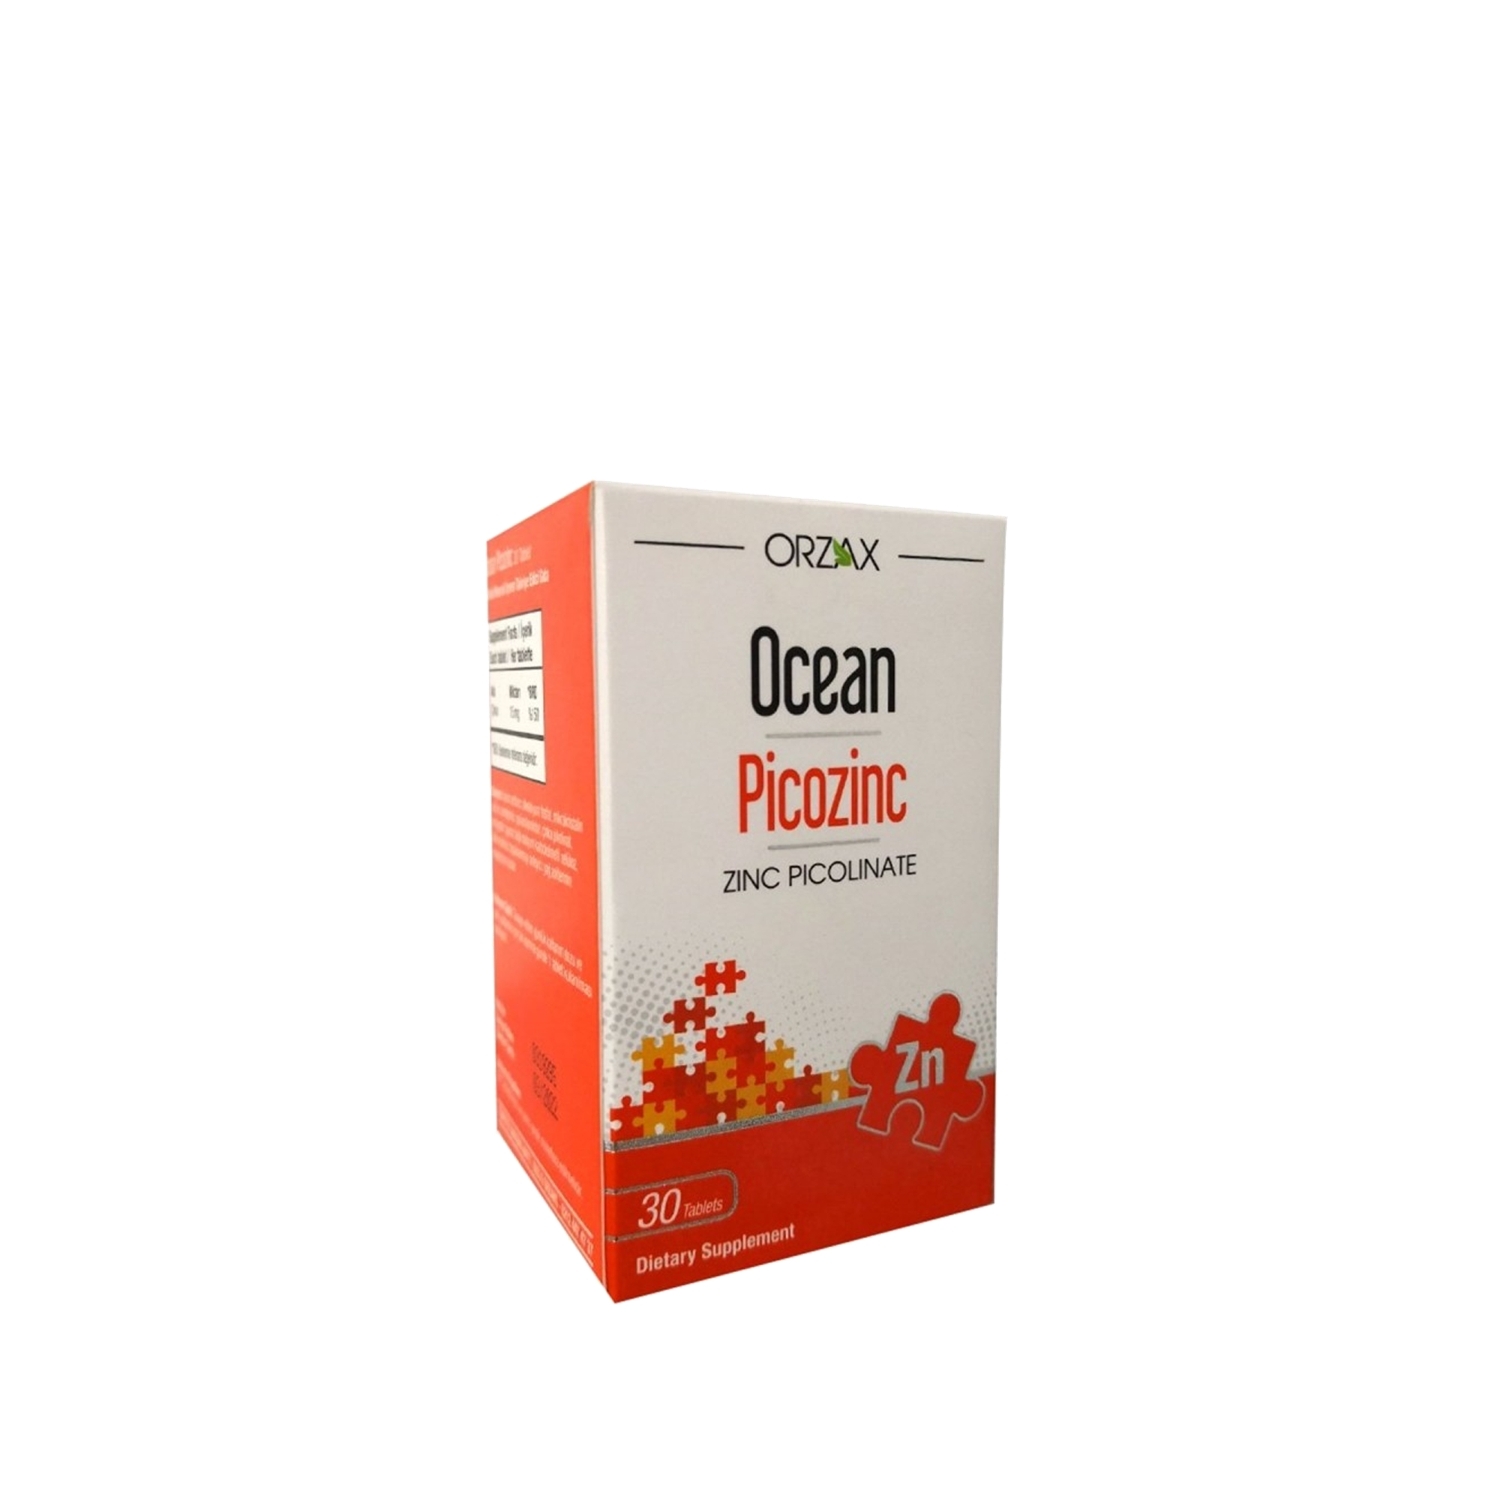 Orzax Ocean Picozinc Takviye Edici Gıda 30 Tablet